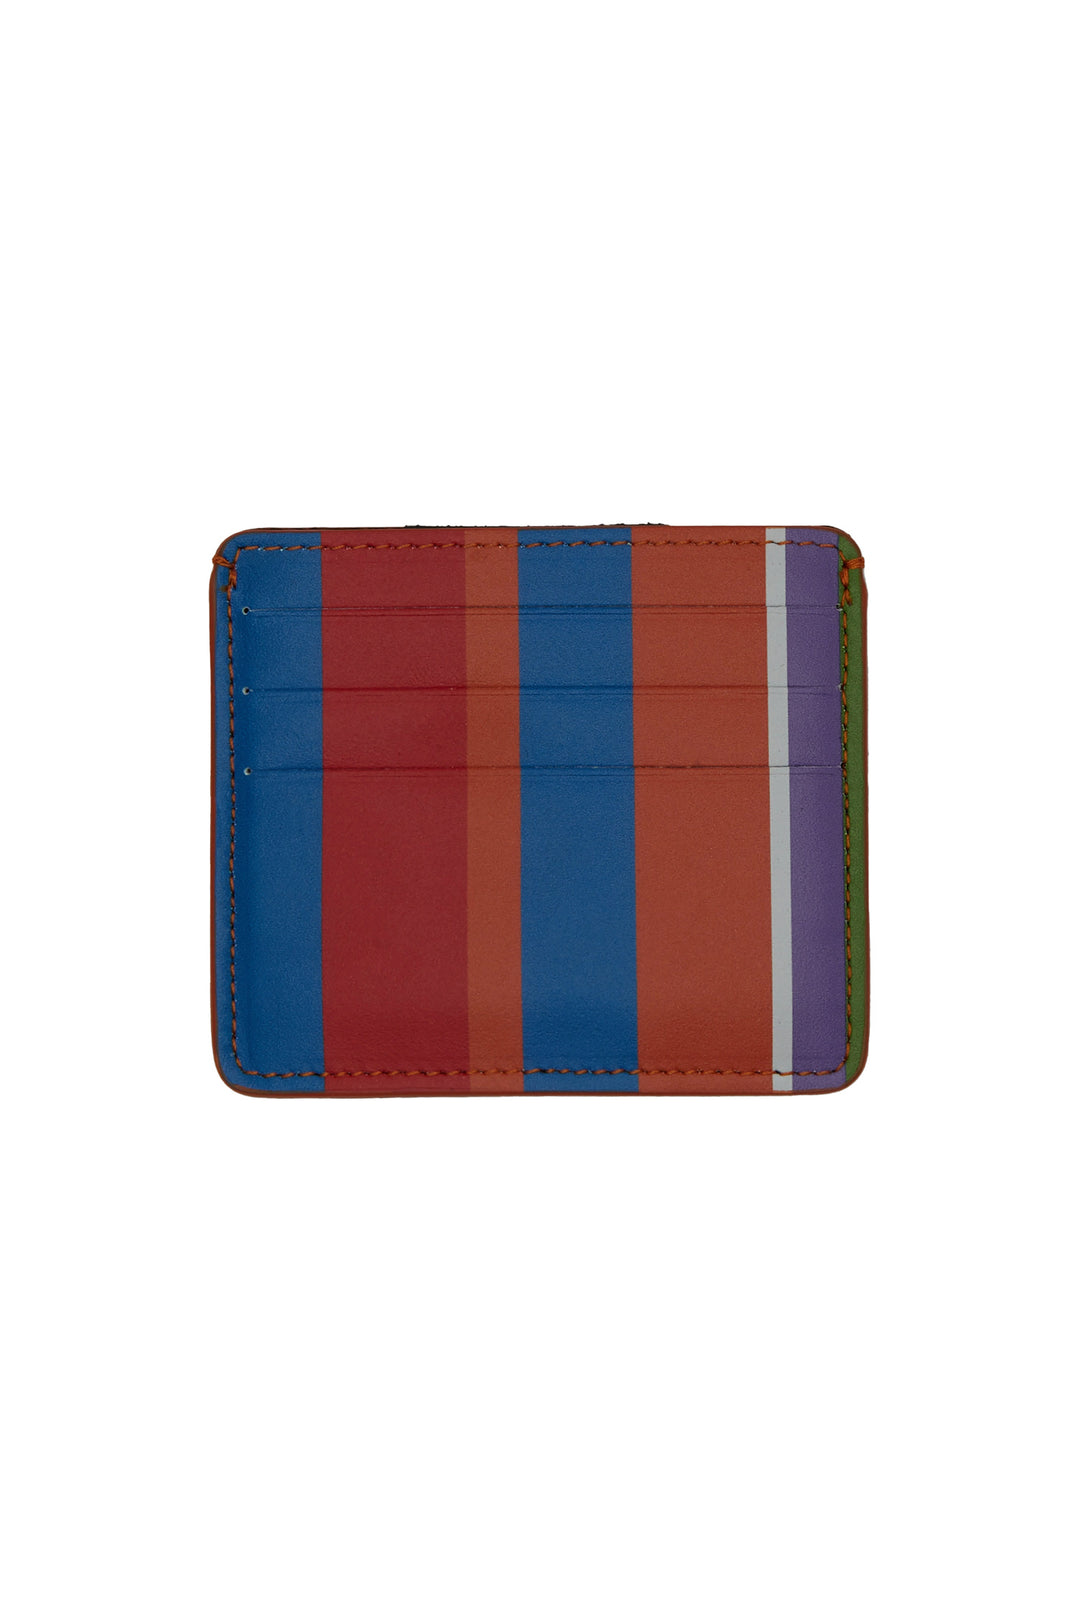 GALLO Porta carta di credito pelle righe multicolor azzurro - Mancinelli 1954